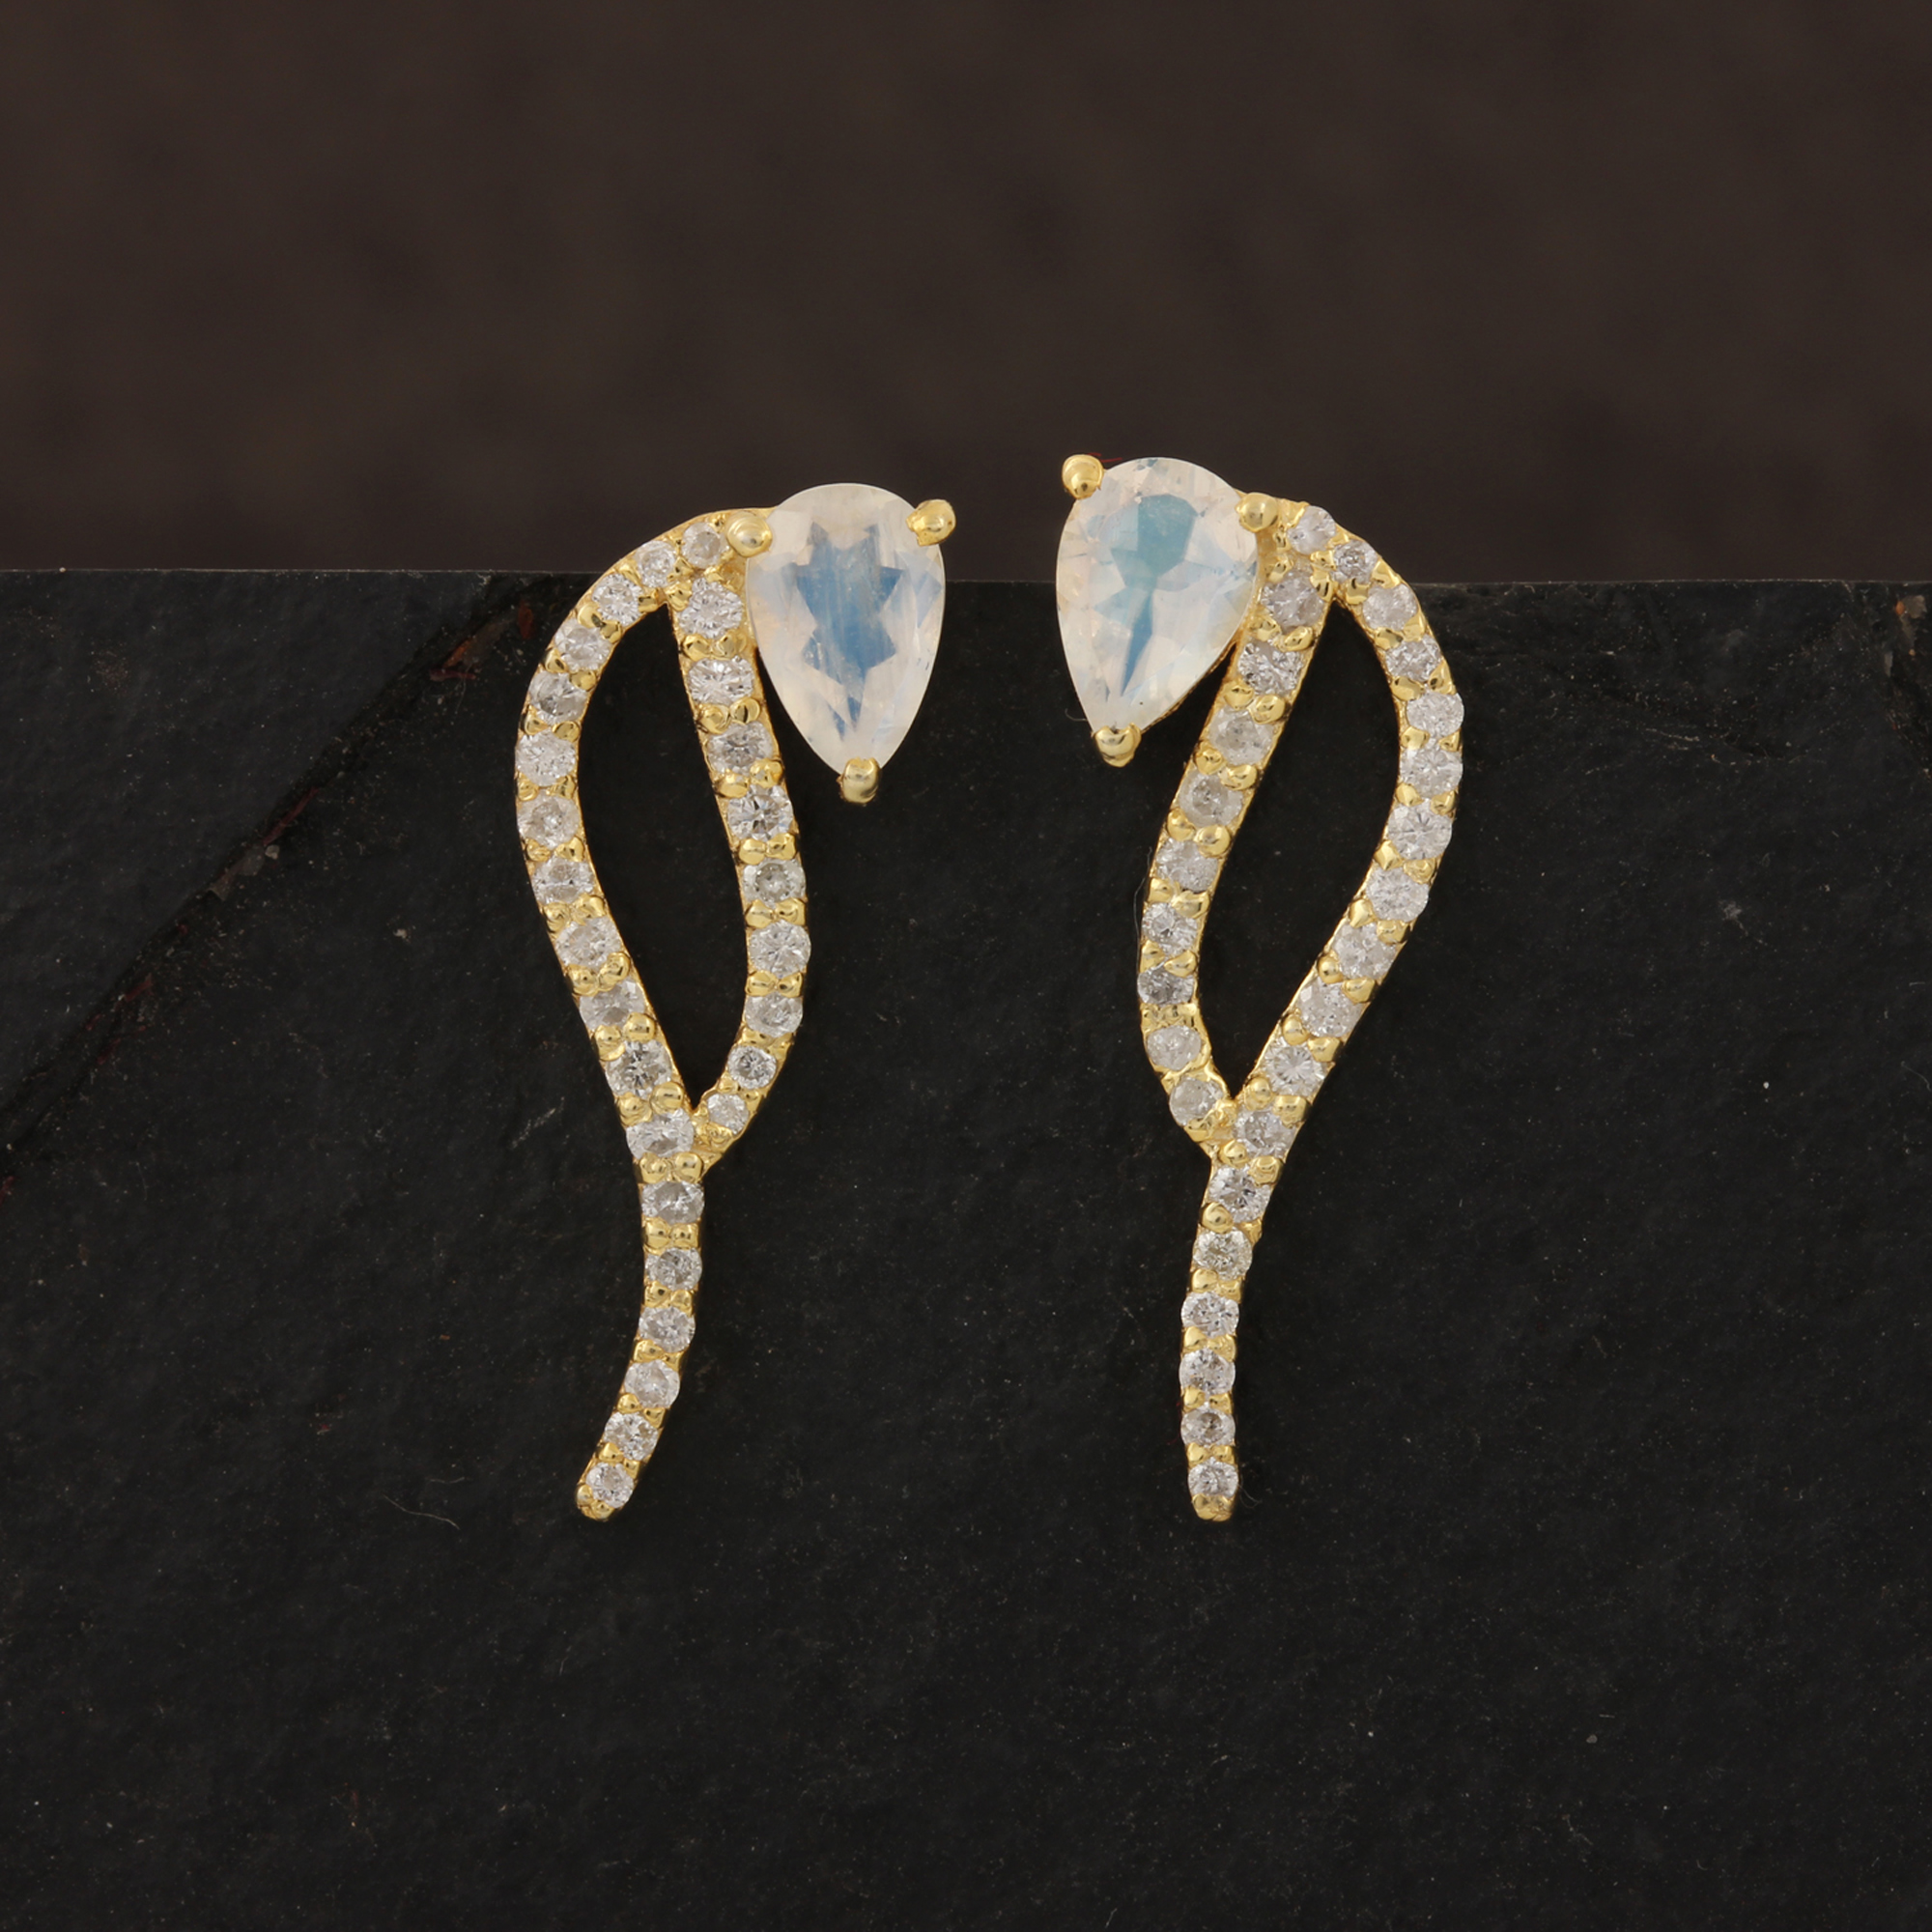 Natural Diamond 14k Solid Gold Rainbow Moonstone Stud Earrings